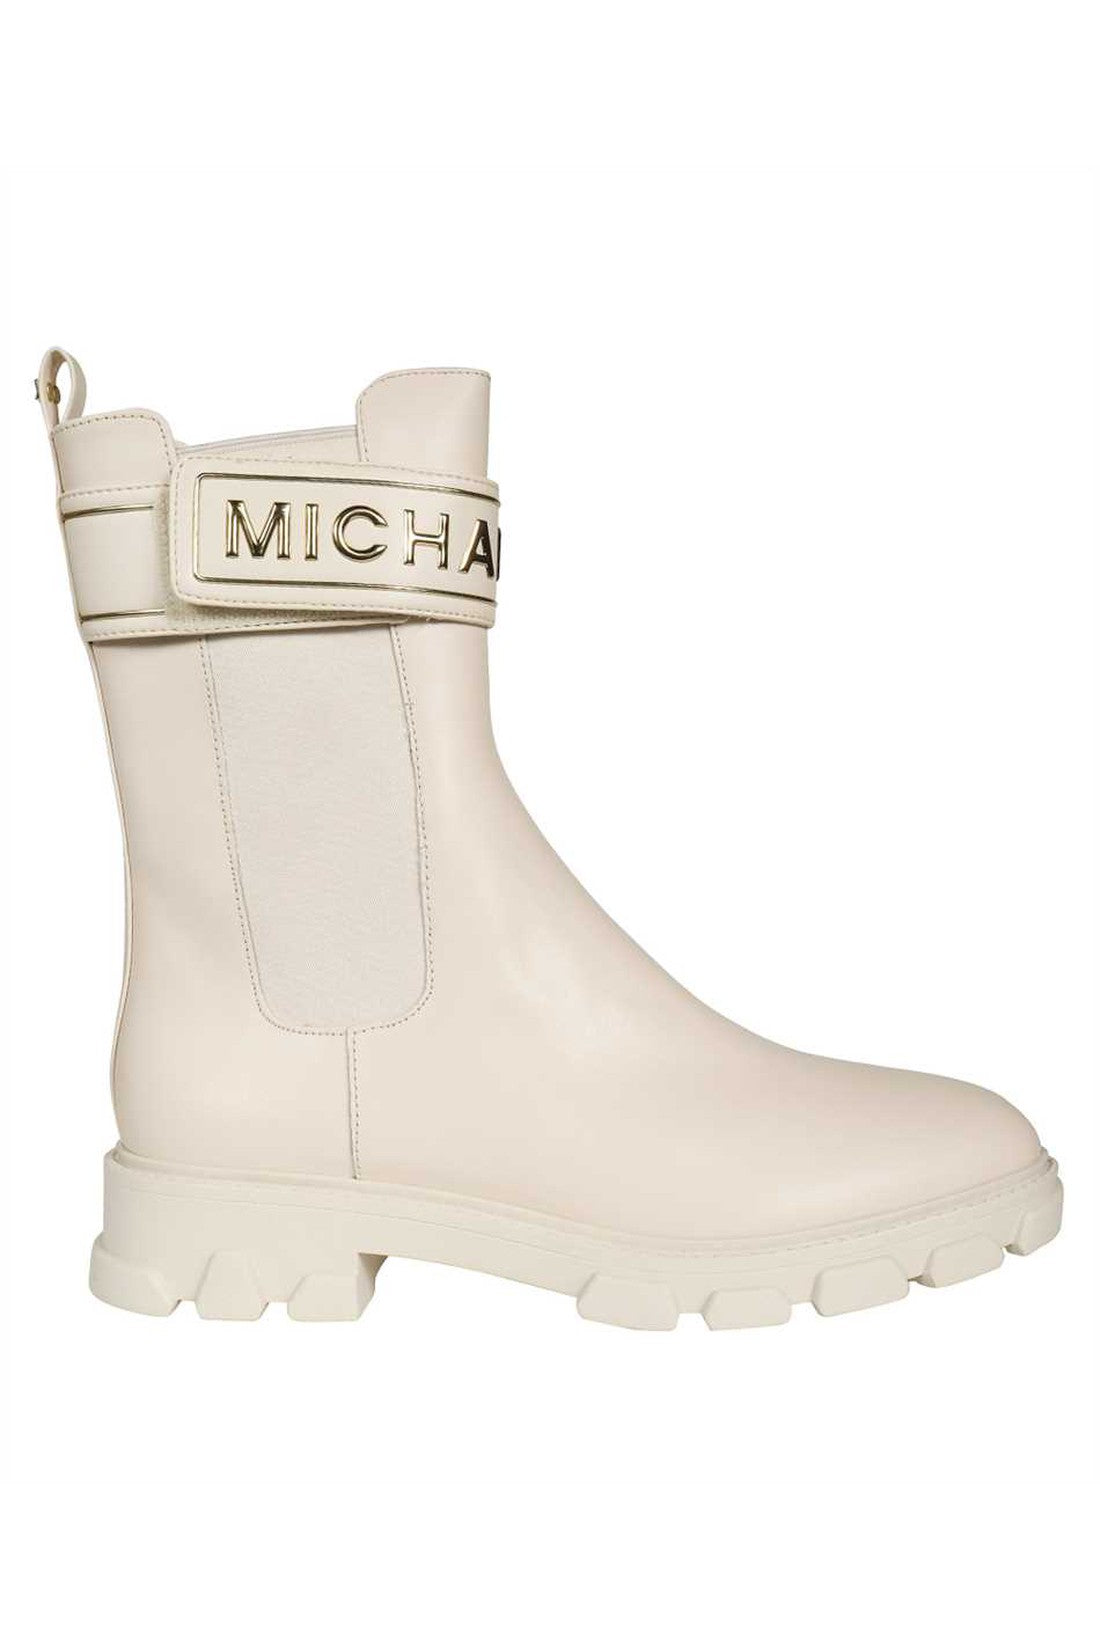 Leather ankle boots-MICHAEL MICHAEL KORS-OUTLET-SALE-10-ARCHIVIST